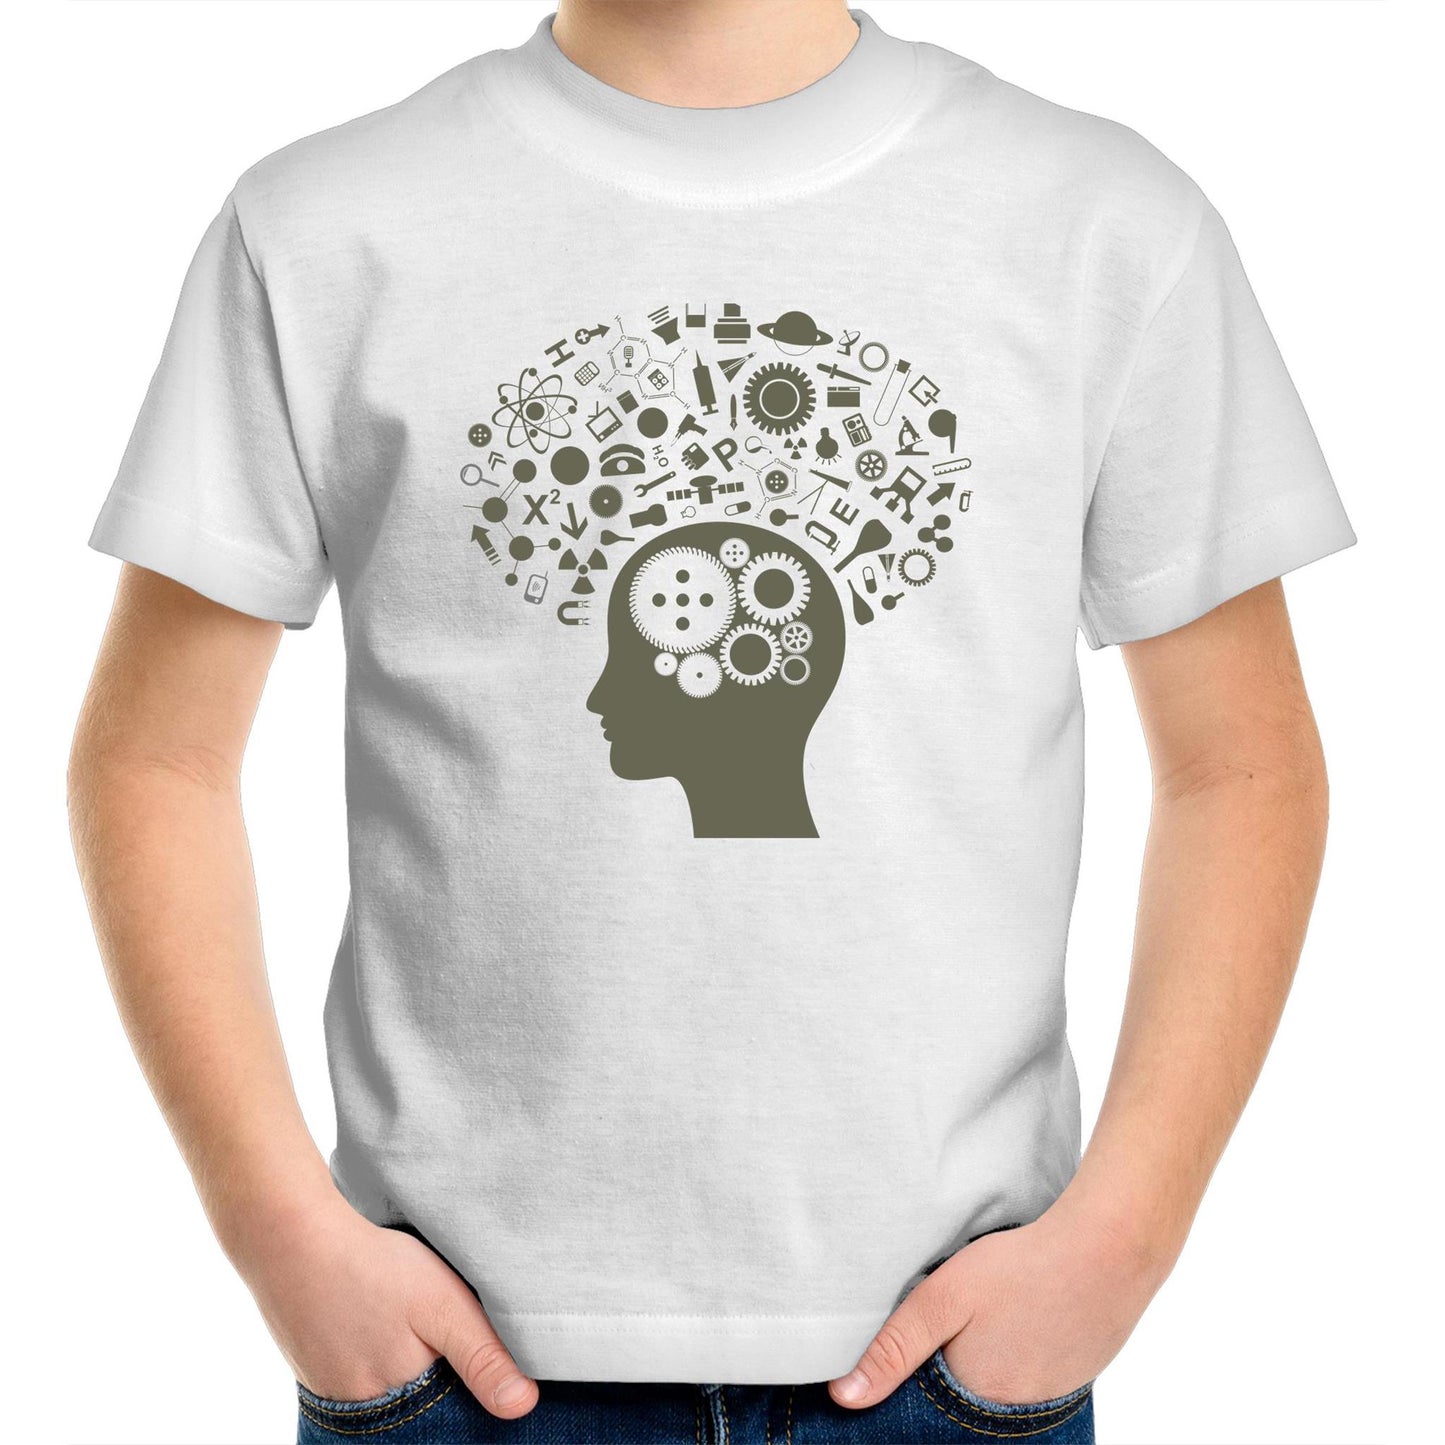 Science Brain - Kids Youth Crew T-Shirt White Kids Youth T-shirt Science